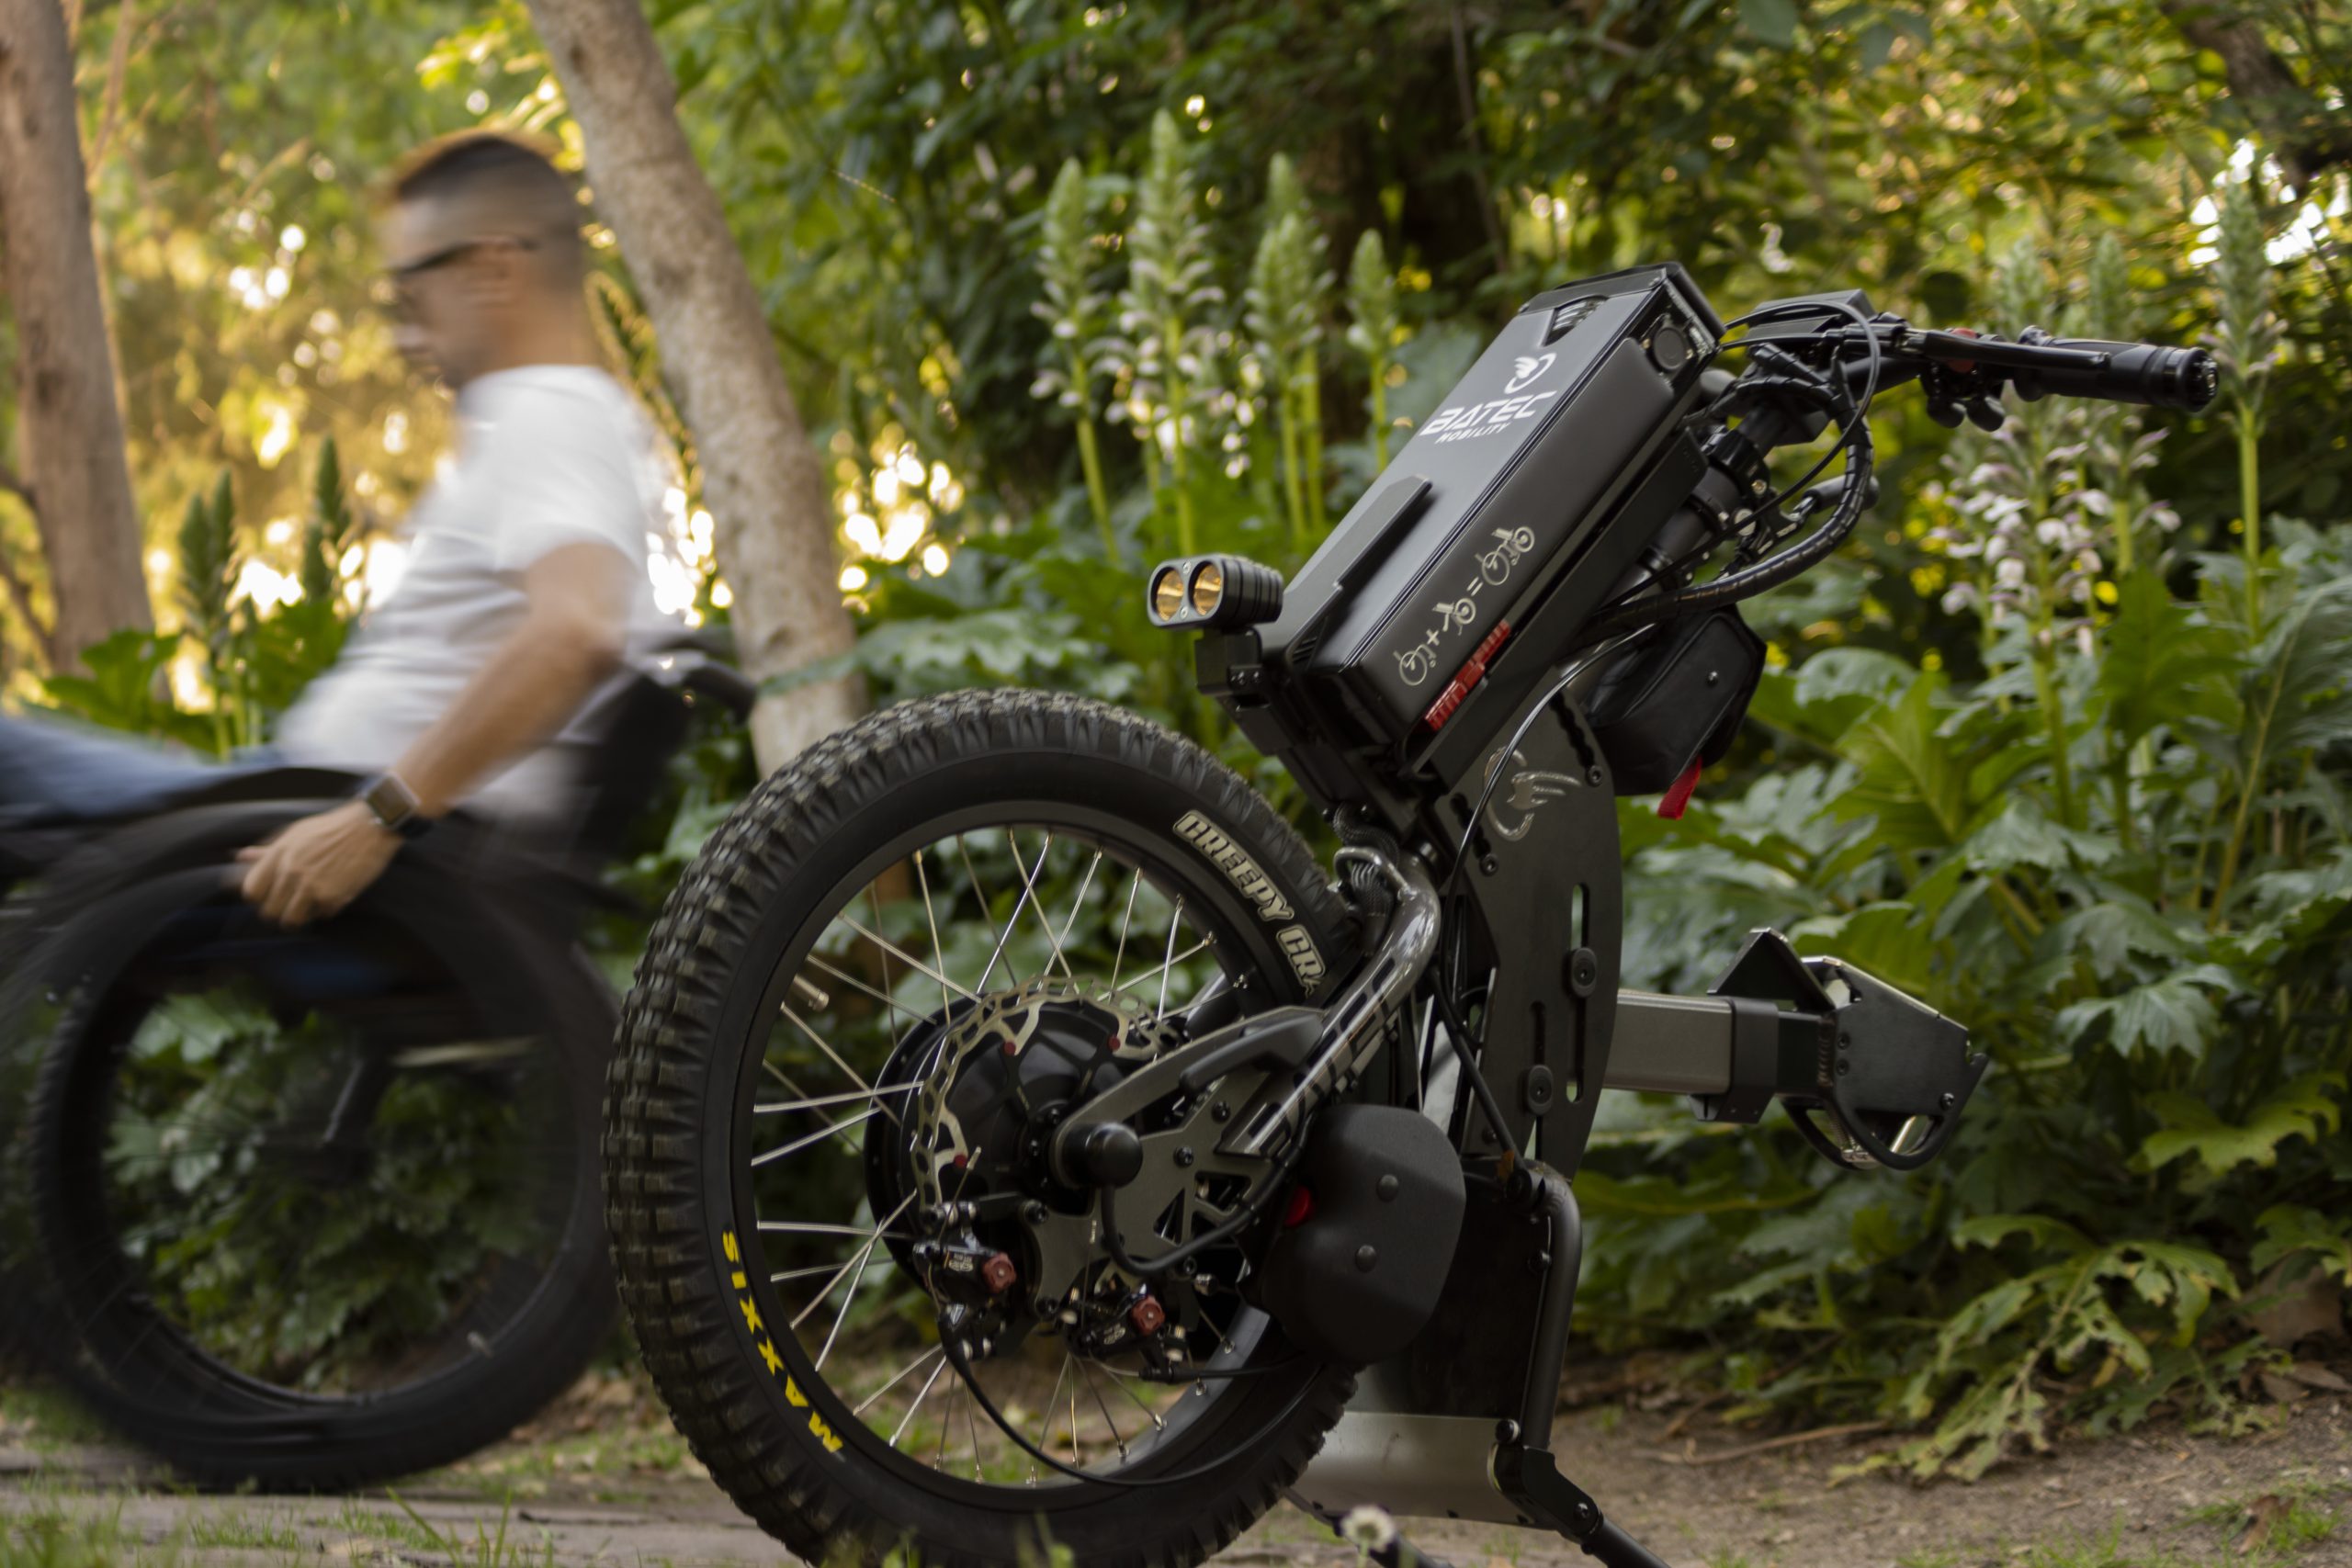 En la imagen se muestra el handbike eléctrico Batec Scrambler 2 en primer plano sobre un fondo vegetal verde y el modelo en silla de ruedas saliendo de la imagen por a parte izquierda.